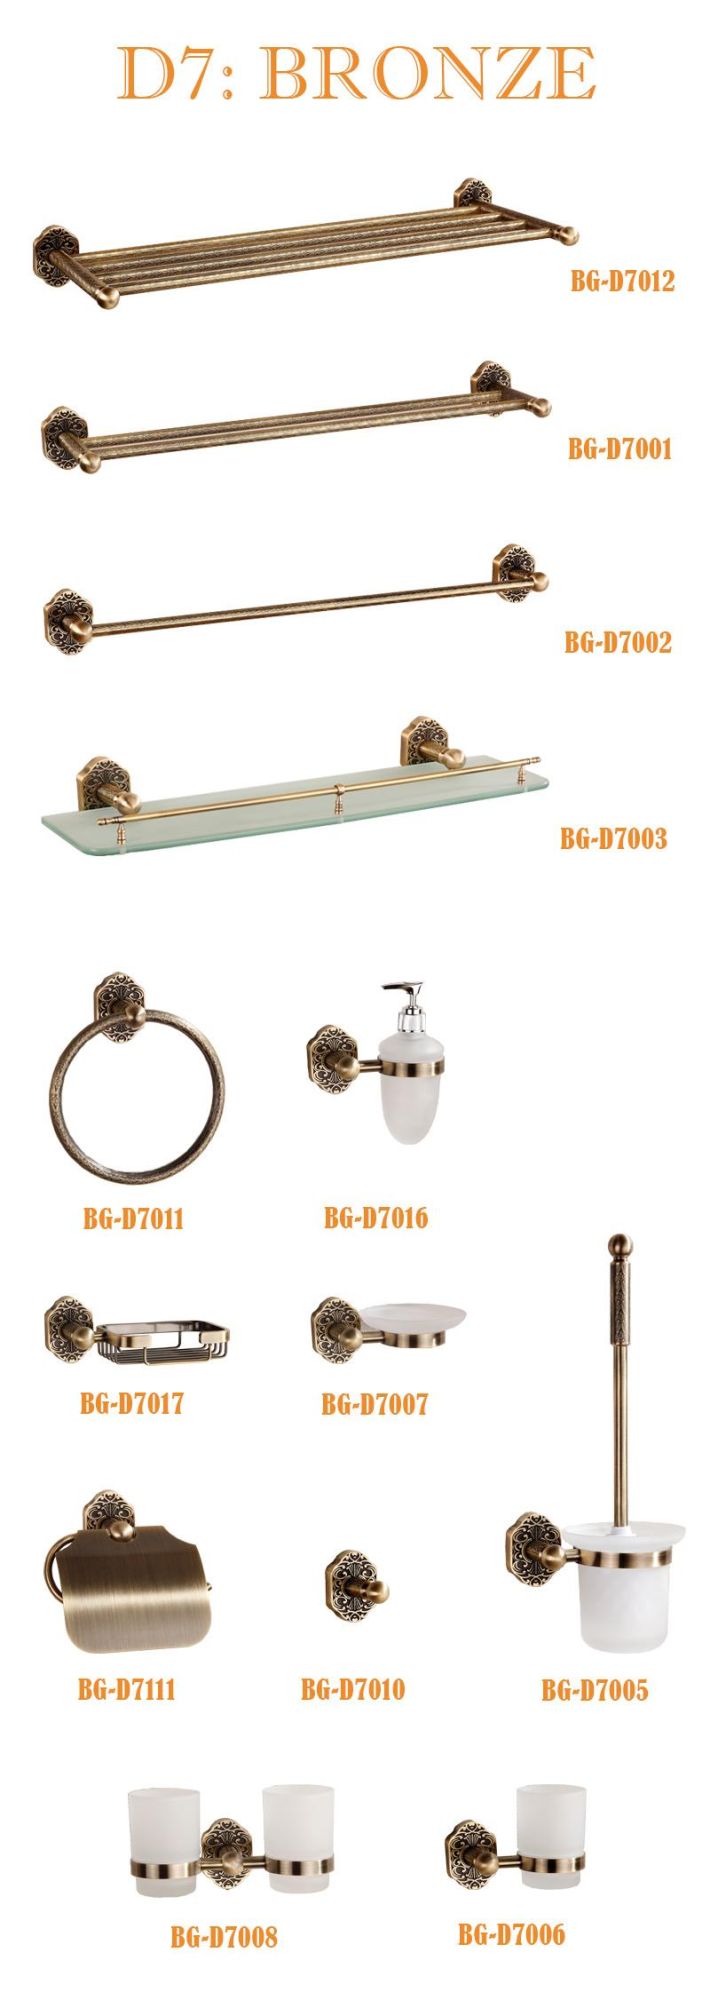 Bronze Toilet Brush Color in Brass Material (BG-D7005)